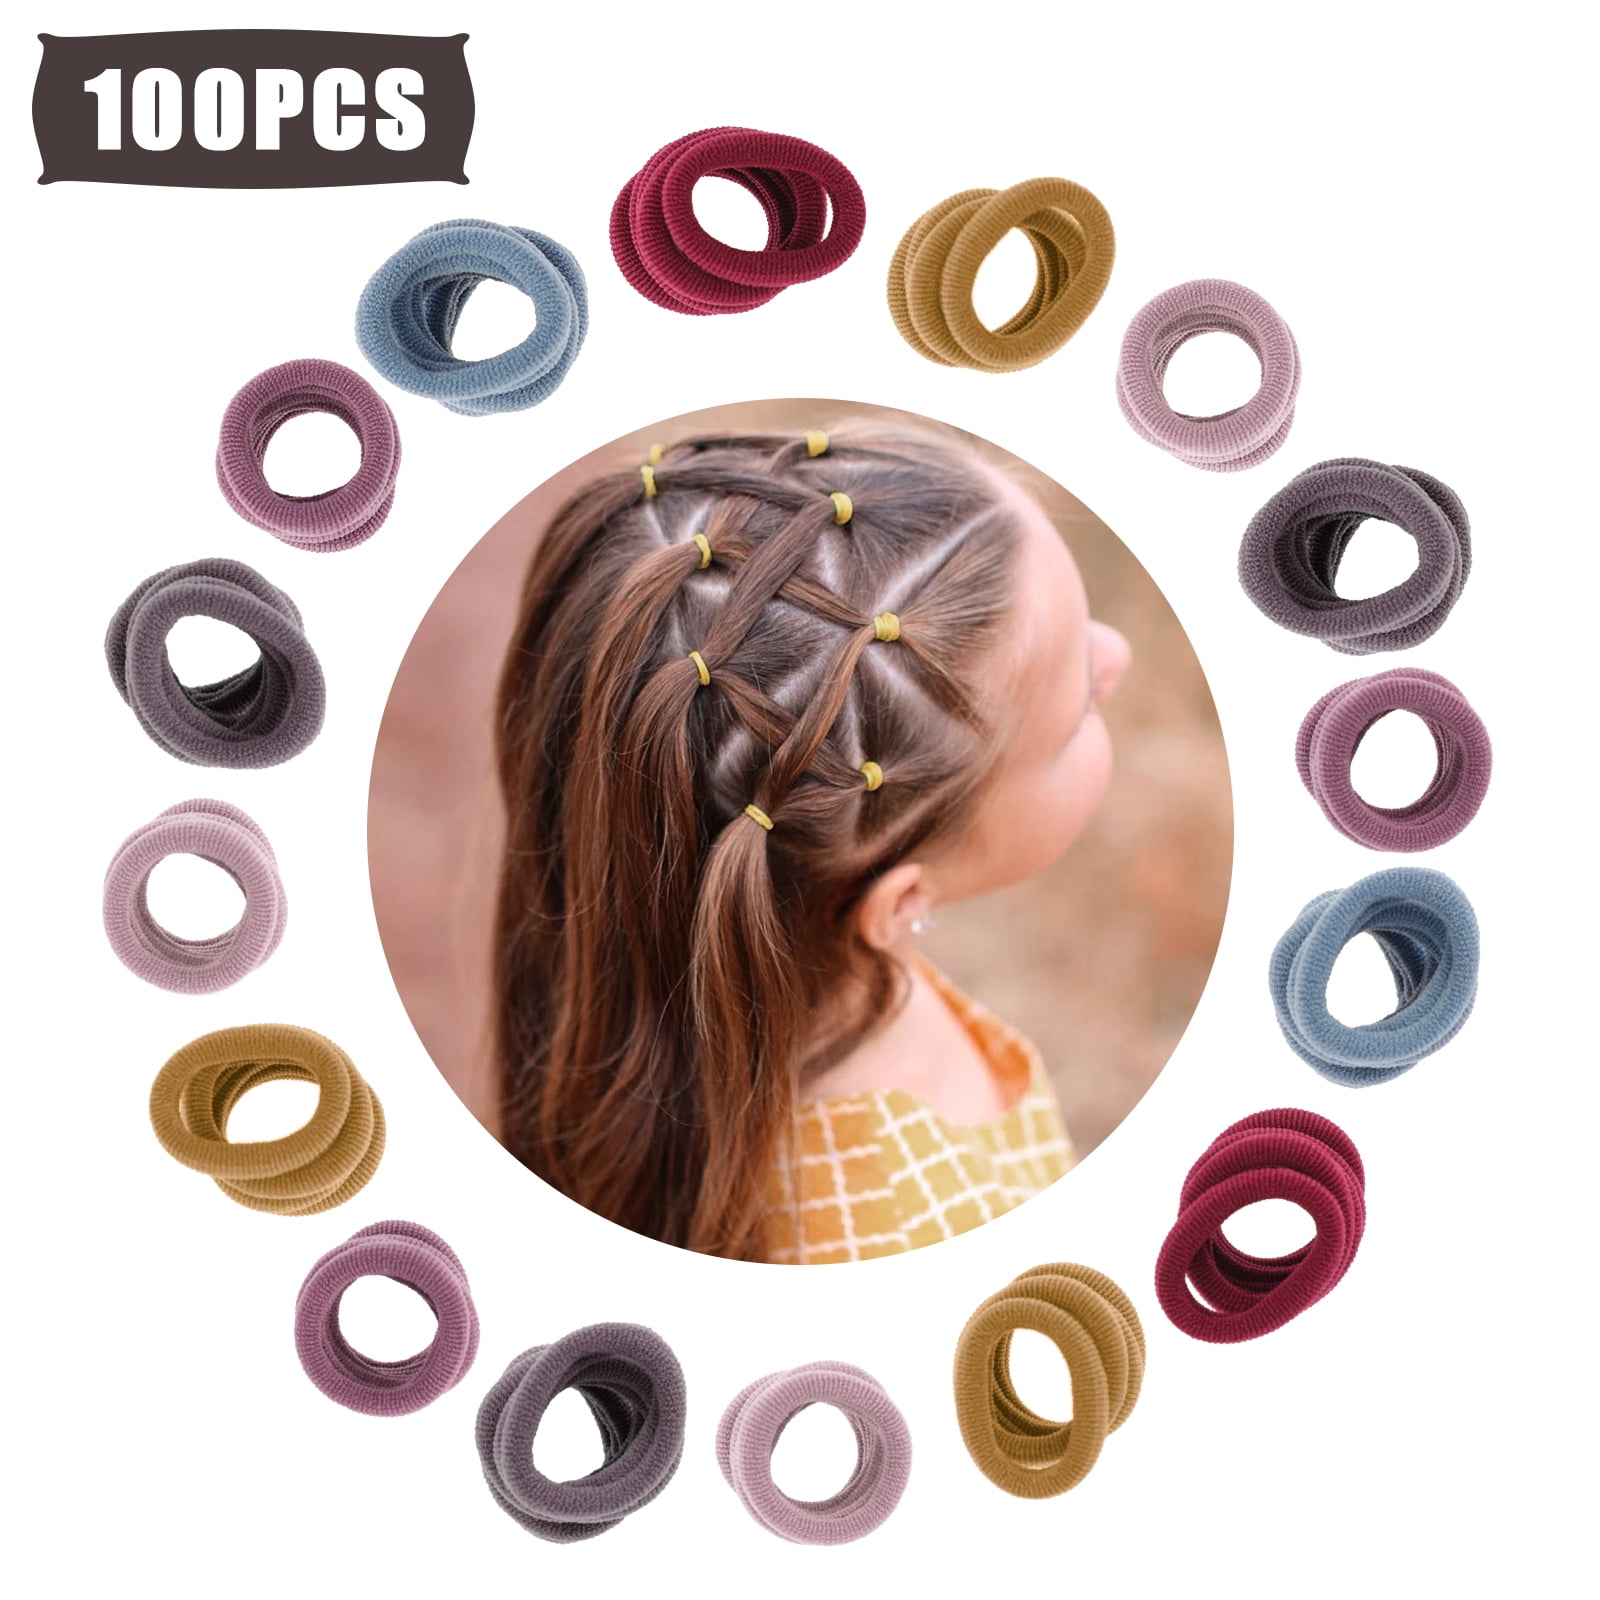 980pcs Black Disposable Elastic Hair Ties